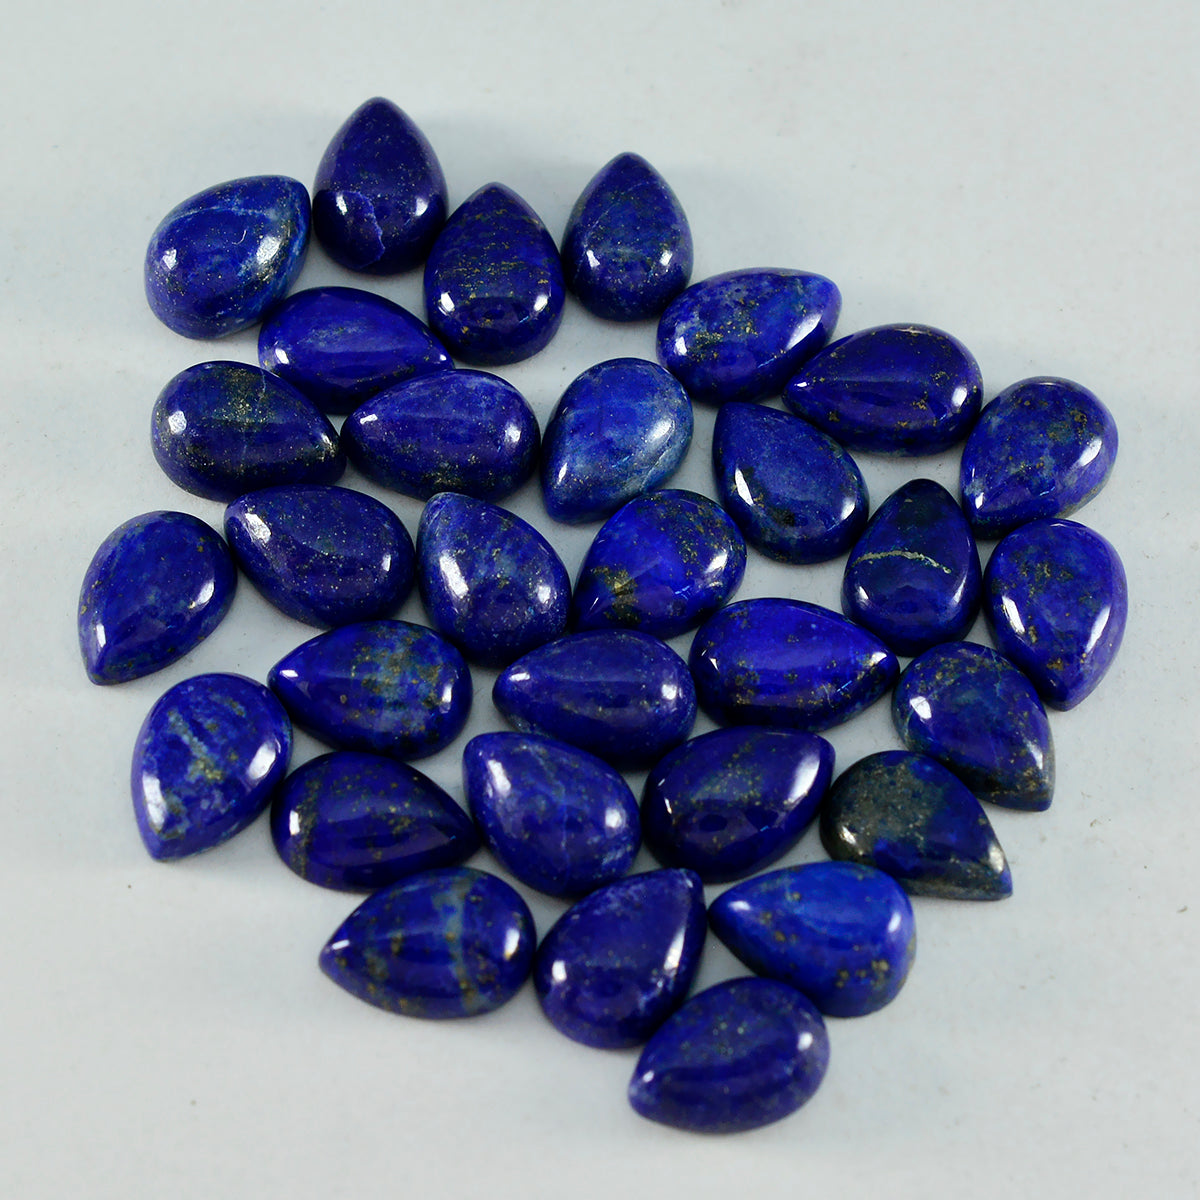 riyogems 1pc cabochon di lapislazzuli blu 5x7 mm forma pera gemma sfusa di qualità A+1